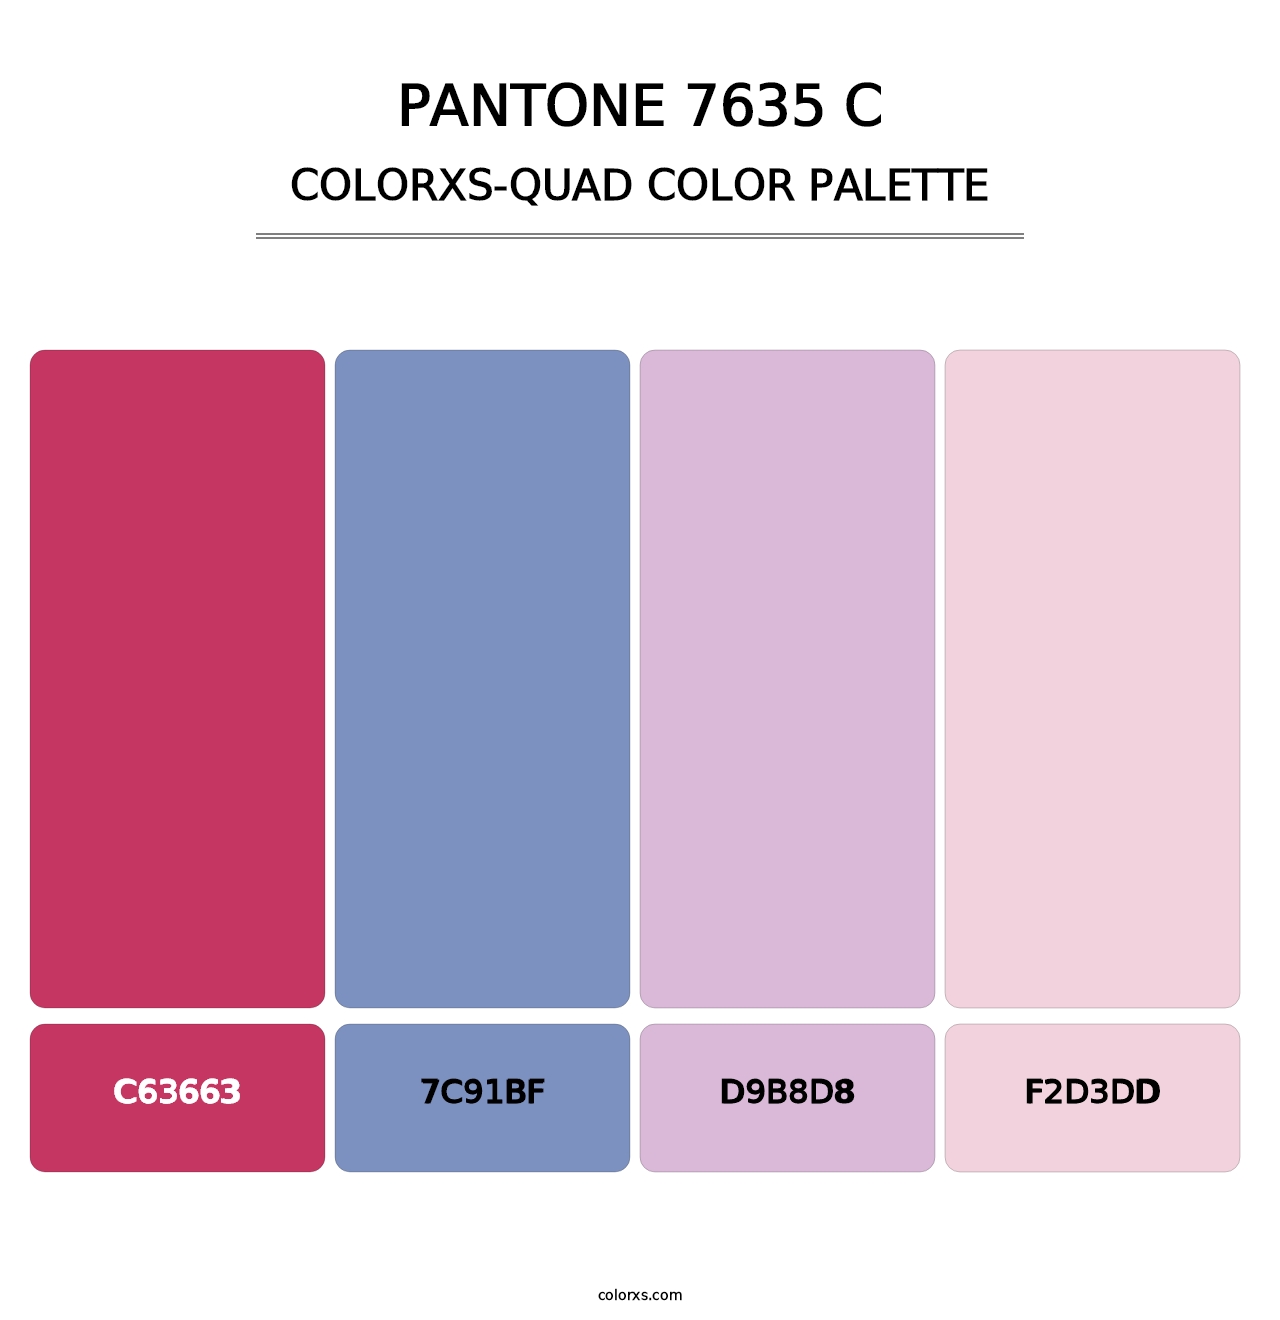 PANTONE 7635 C - Colorxs Quad Palette